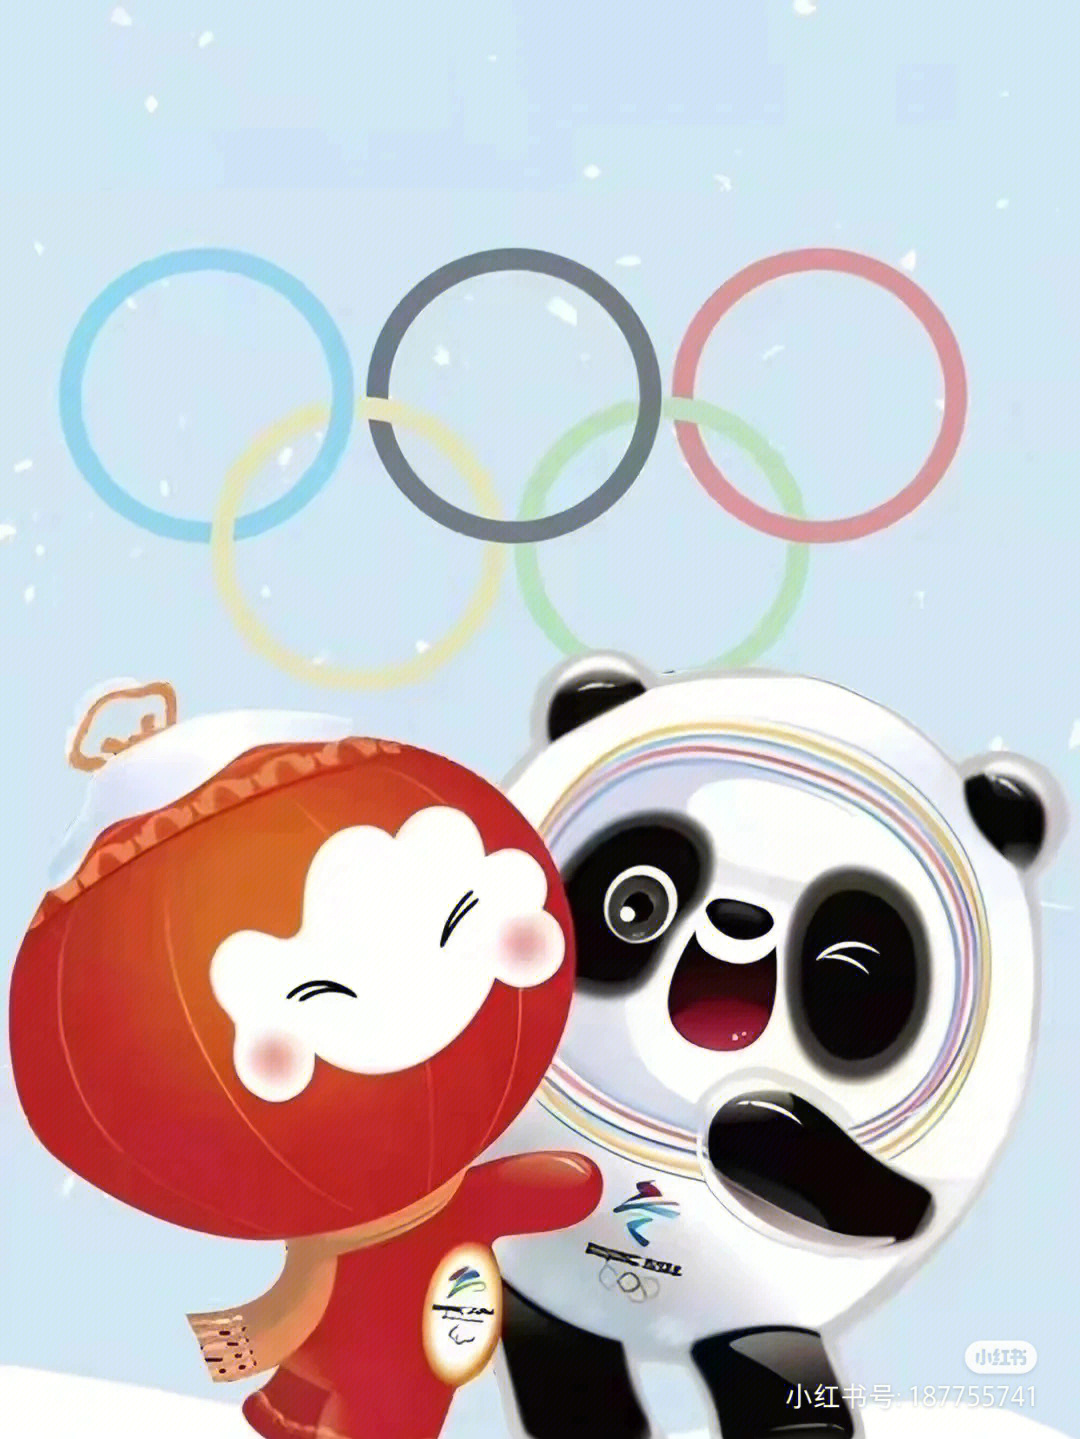 北京2022年冬奥会和冬残奥会吉祥物揭晓